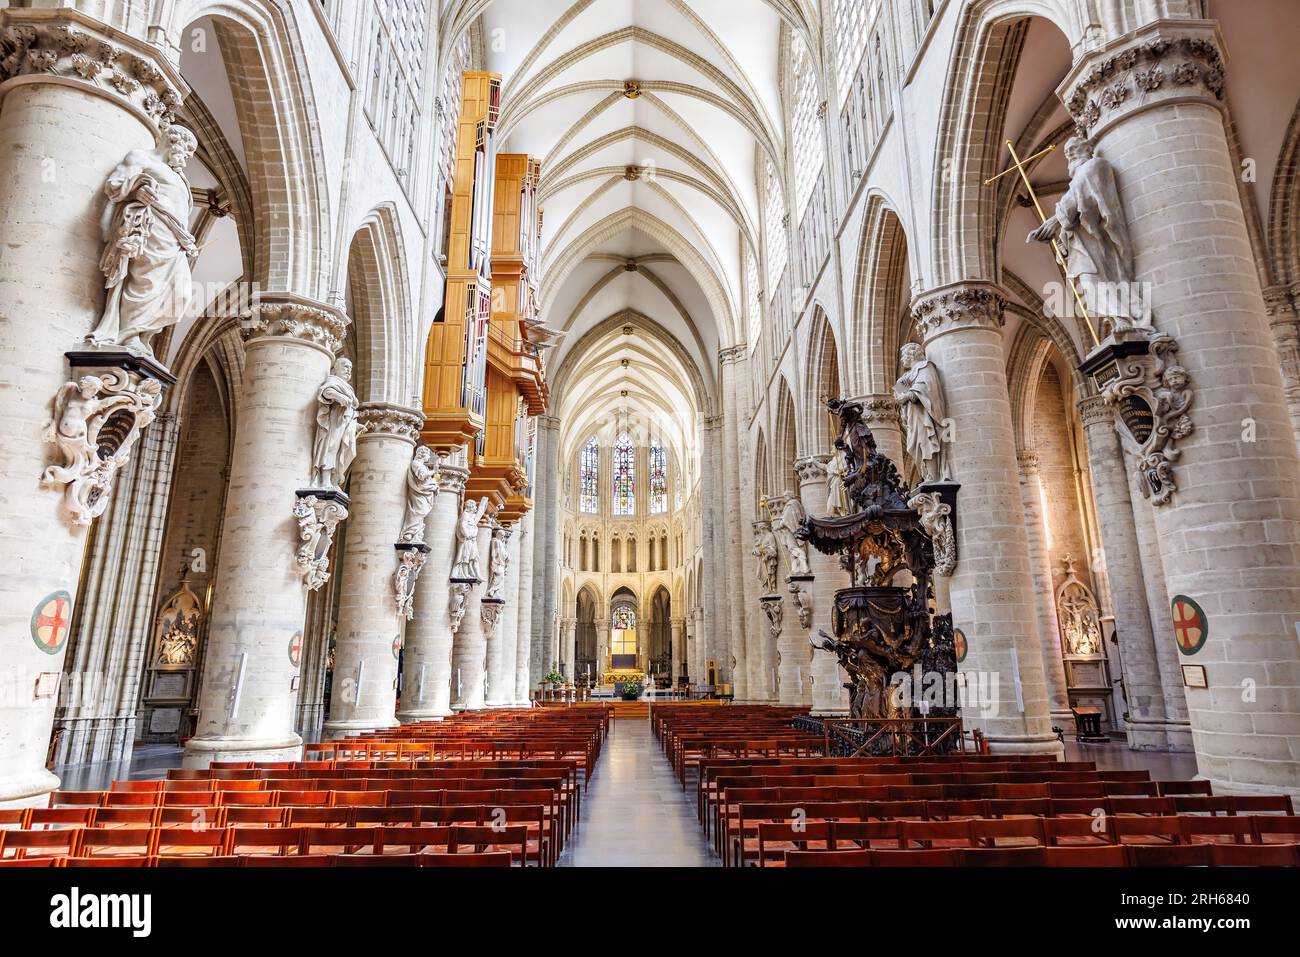 Bruxelles, Belgio - 15 giugno 2023: Interno della Cattedrale di San Michele e San Gudula (Cathédrale des Saints Michel et Gudule), una cattedrale medievale romana risalente al secolo scorso Foto Stock